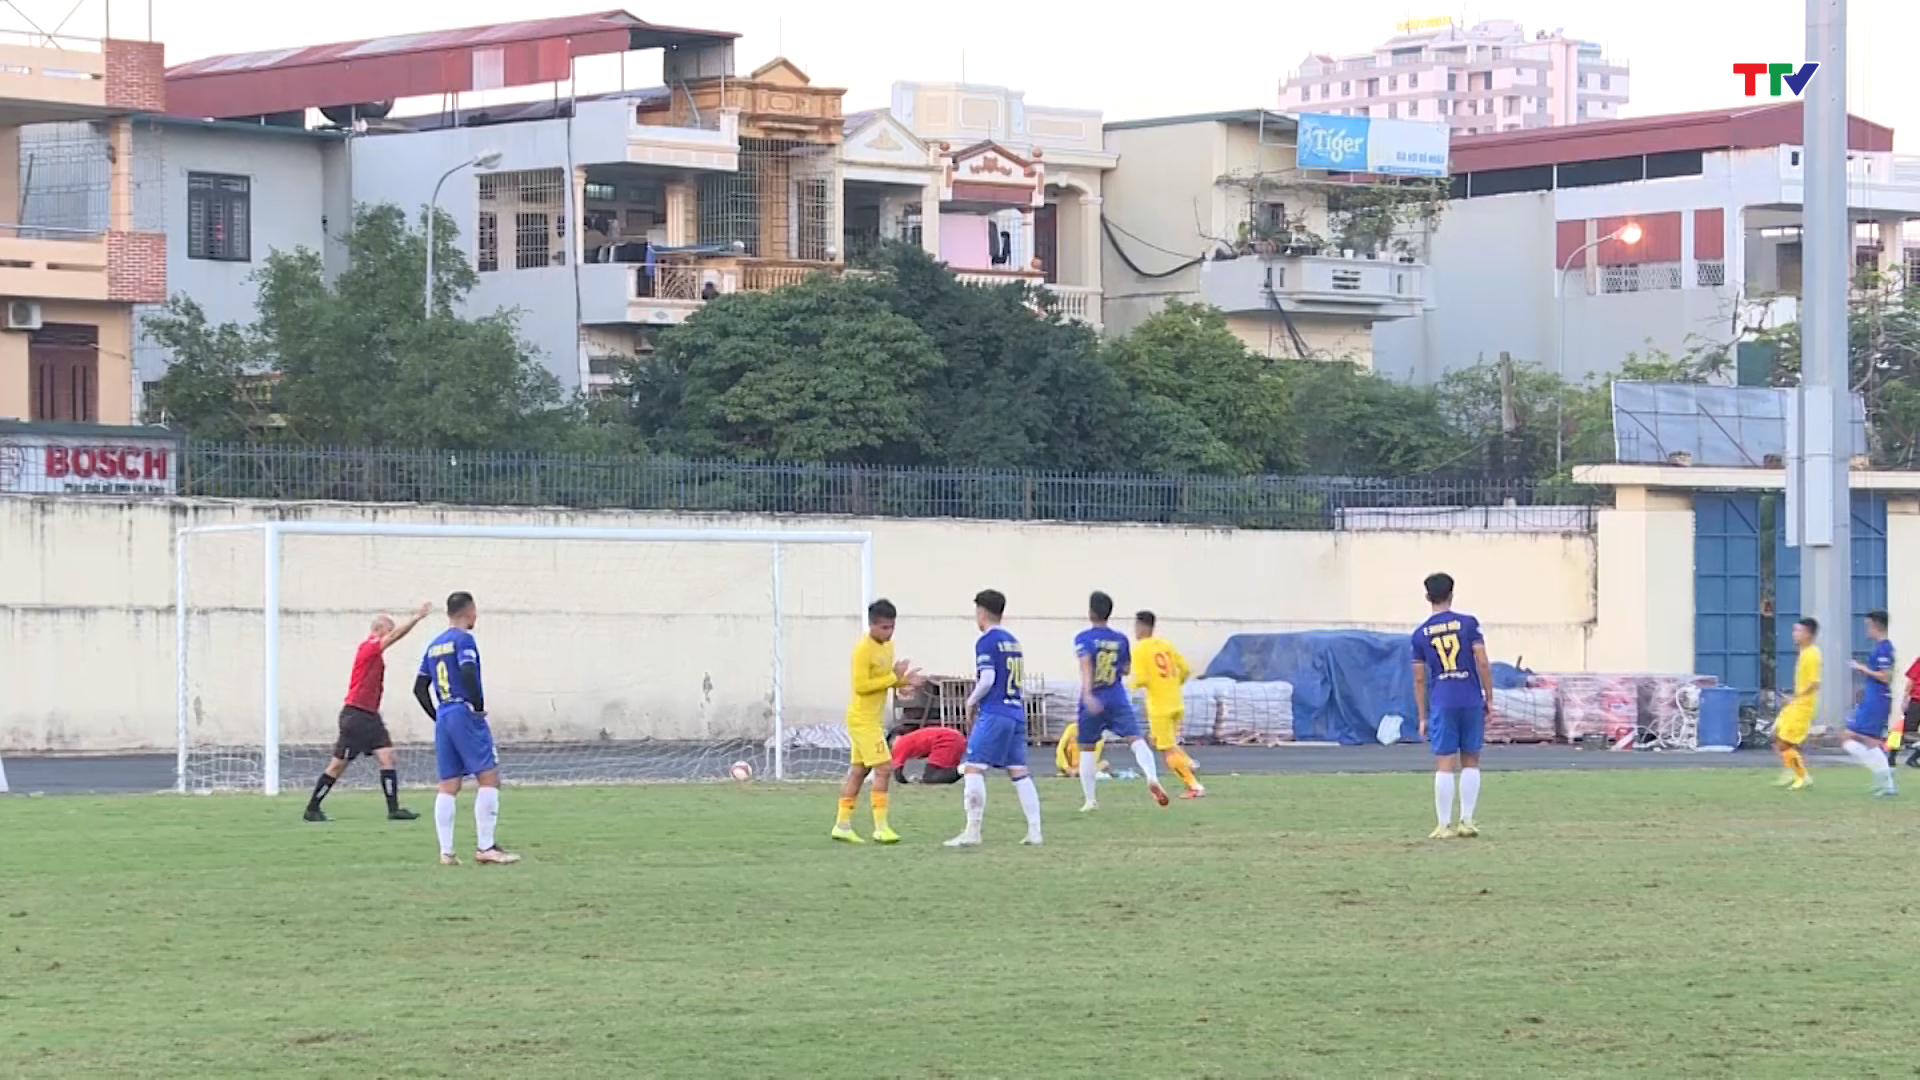 Giao hữu trước mùa giải: Đông Á Thanh Hóa ngược dòng chiến thắng Sông Lam Nghệ An - Ảnh 3.